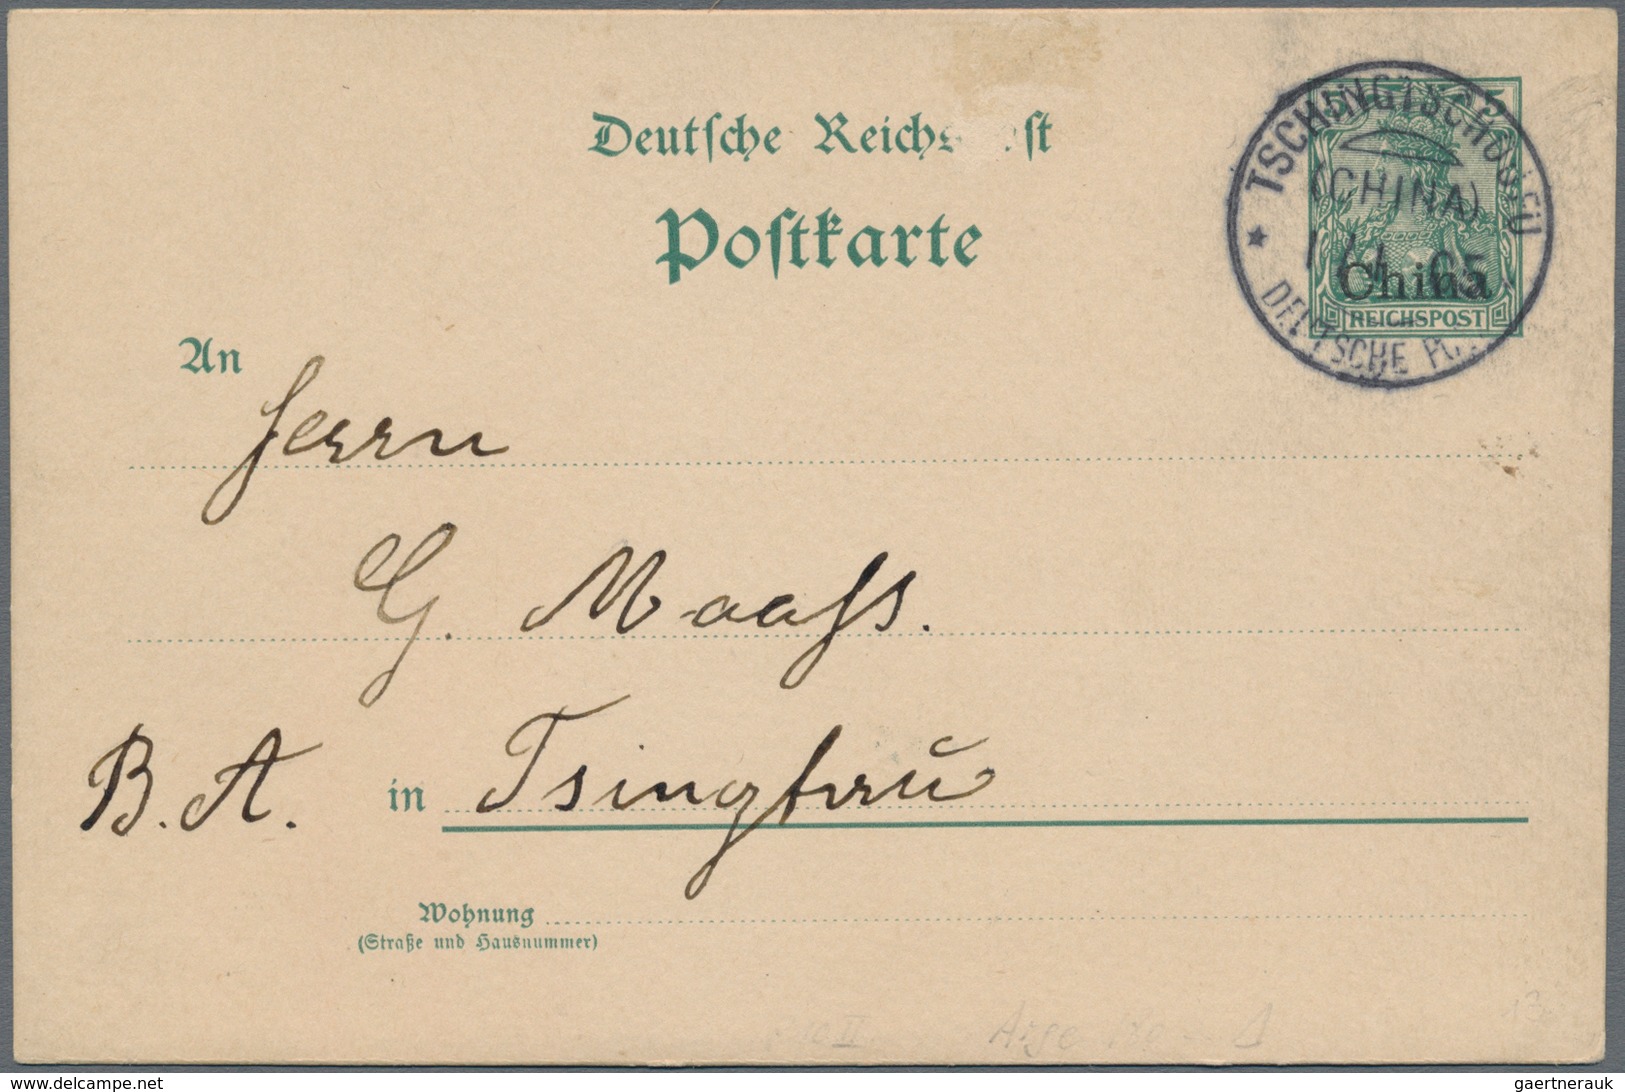 Deutsche Post In China - Stempel: 1905 (1.1.), "TSCHINGTSCHO*UFU (ChINA) DEUTSCHE POST" Klarer Absch - China (offices)